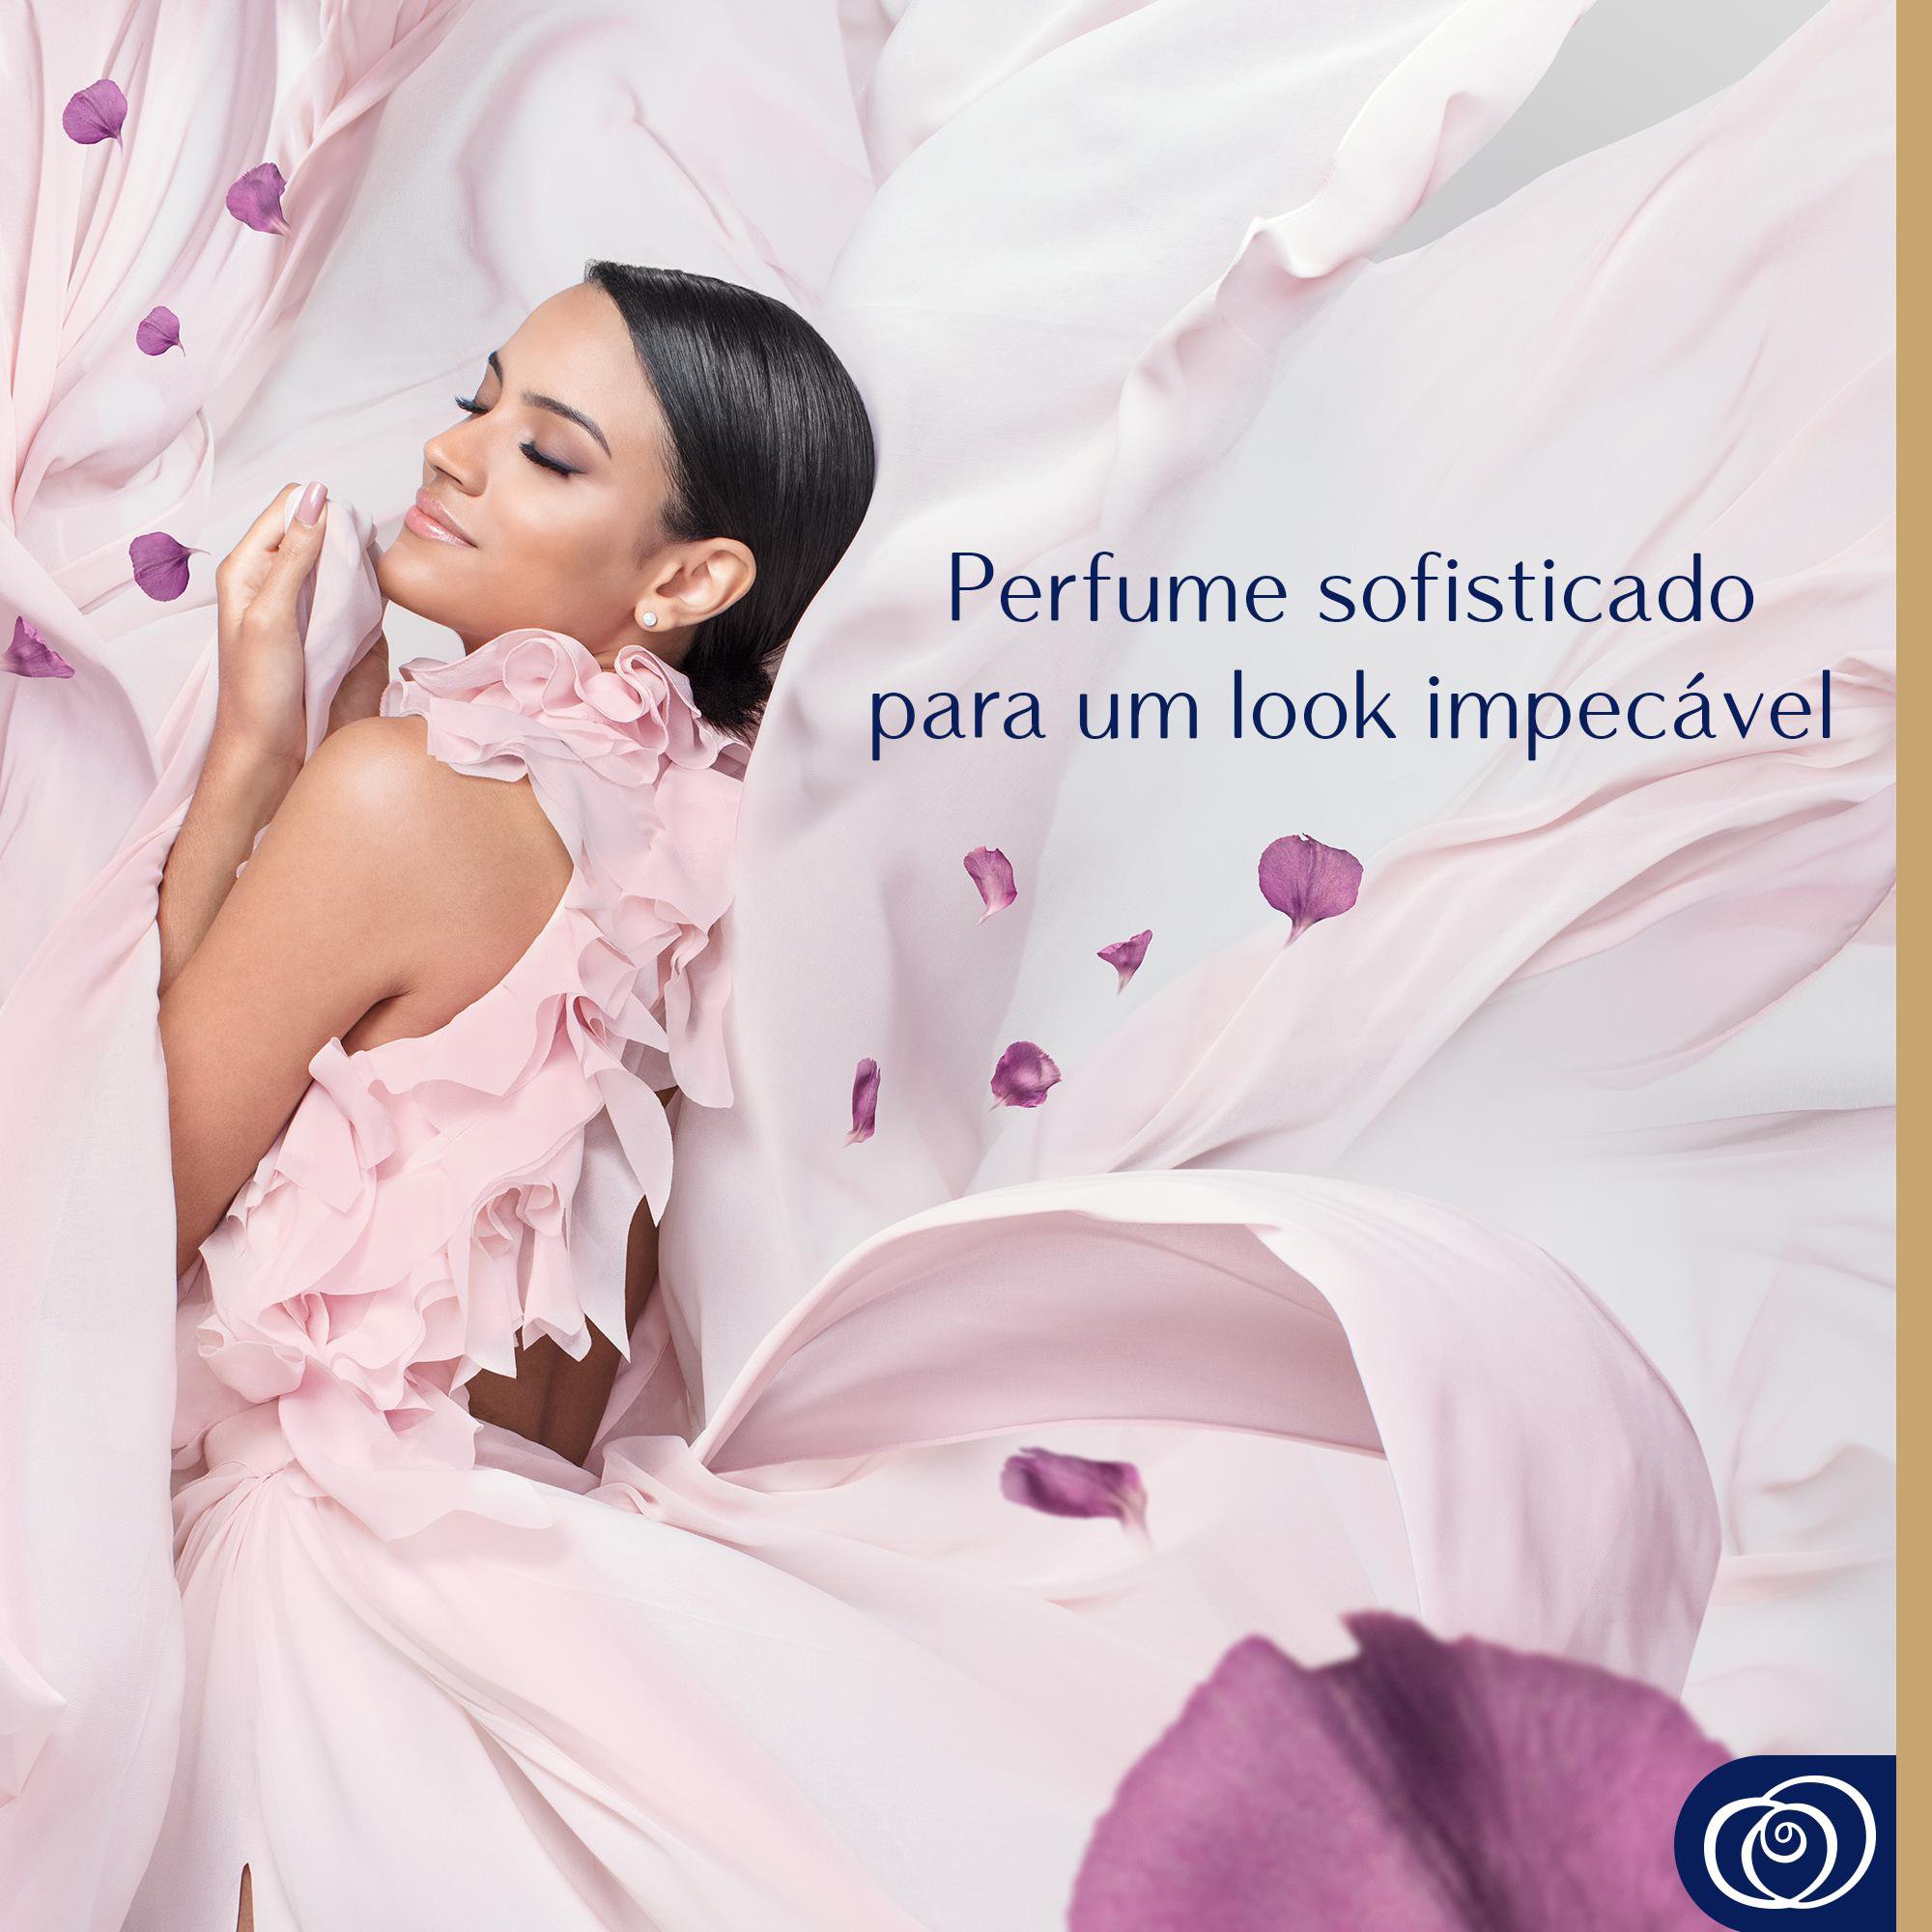 Amaciante Downy Perfume Collection Liberdade - Parfume sofisticado para um look impecevael
